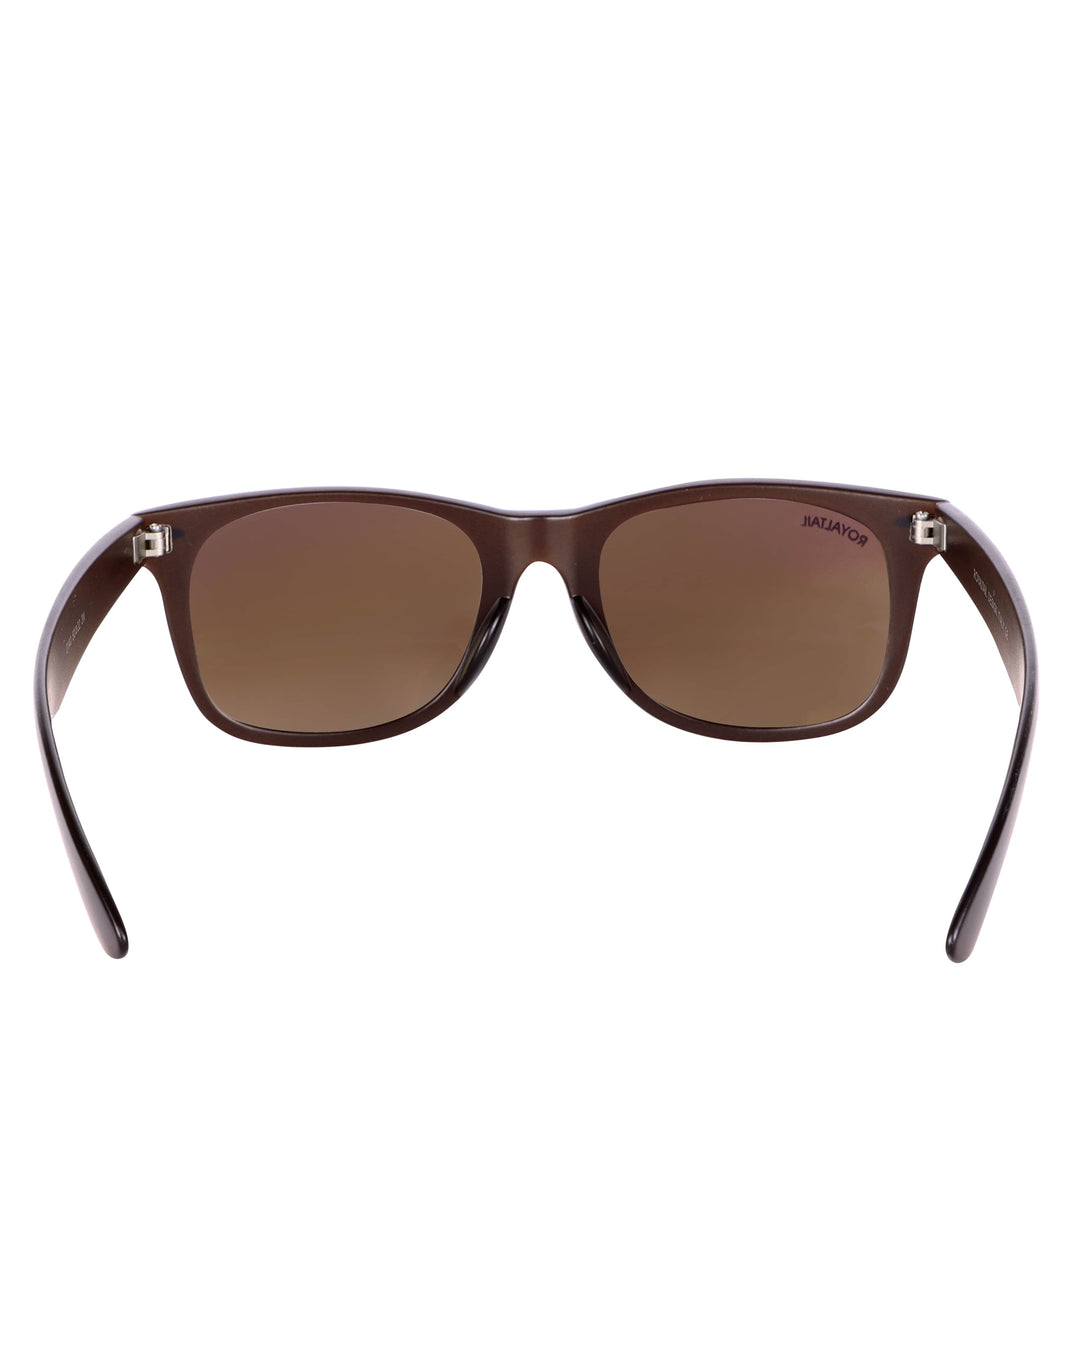 royaltail brown sunglasses wayfarer